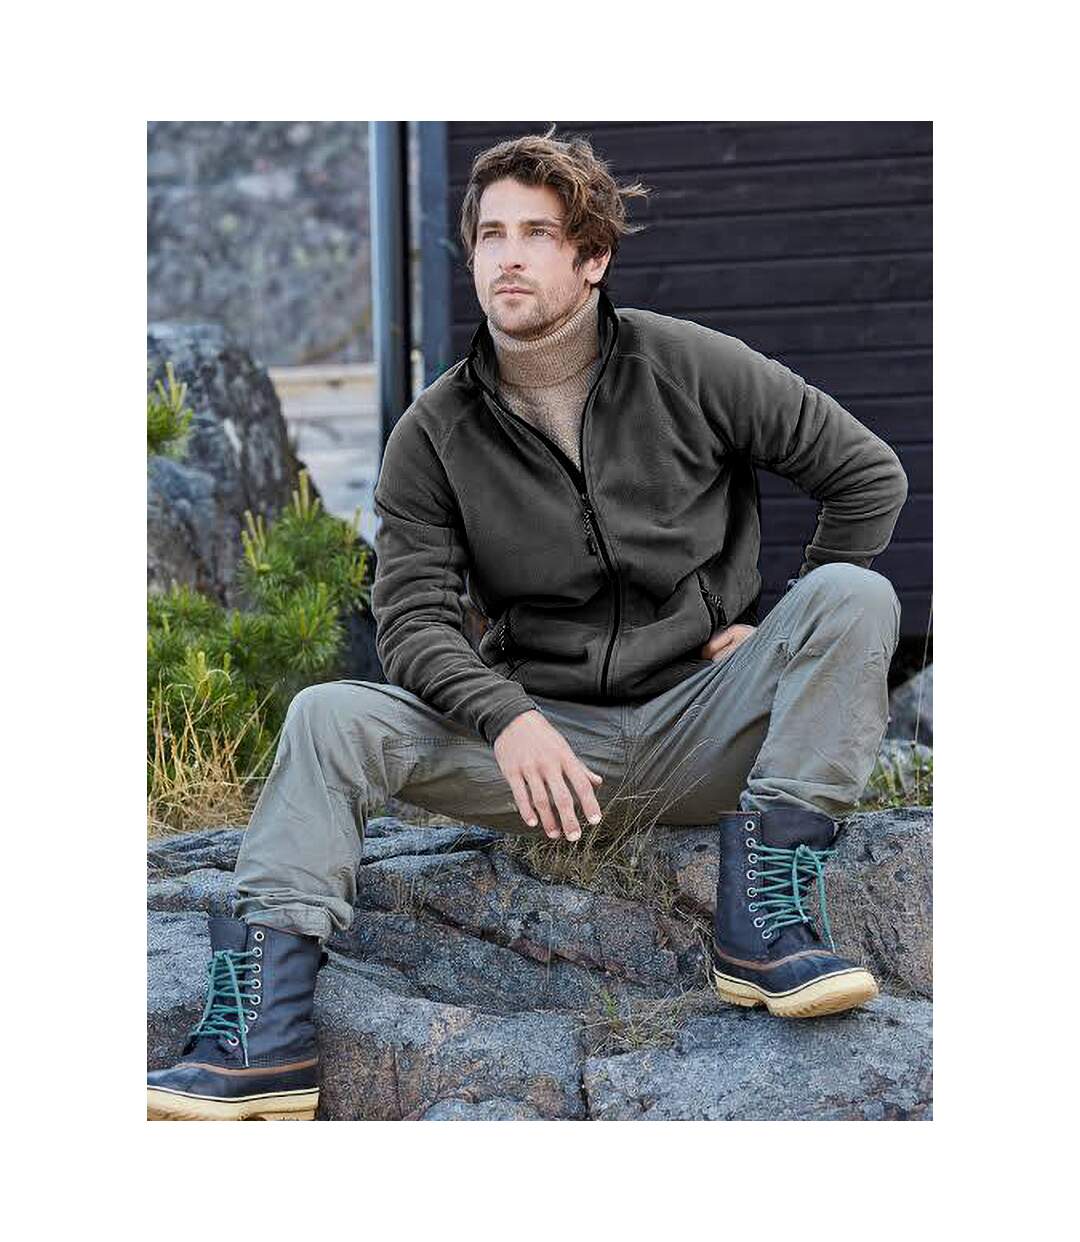 Tee Jays Mens Full Zip Active Lightweight Fleece Jacket (Dark Grey) - UTBC3362